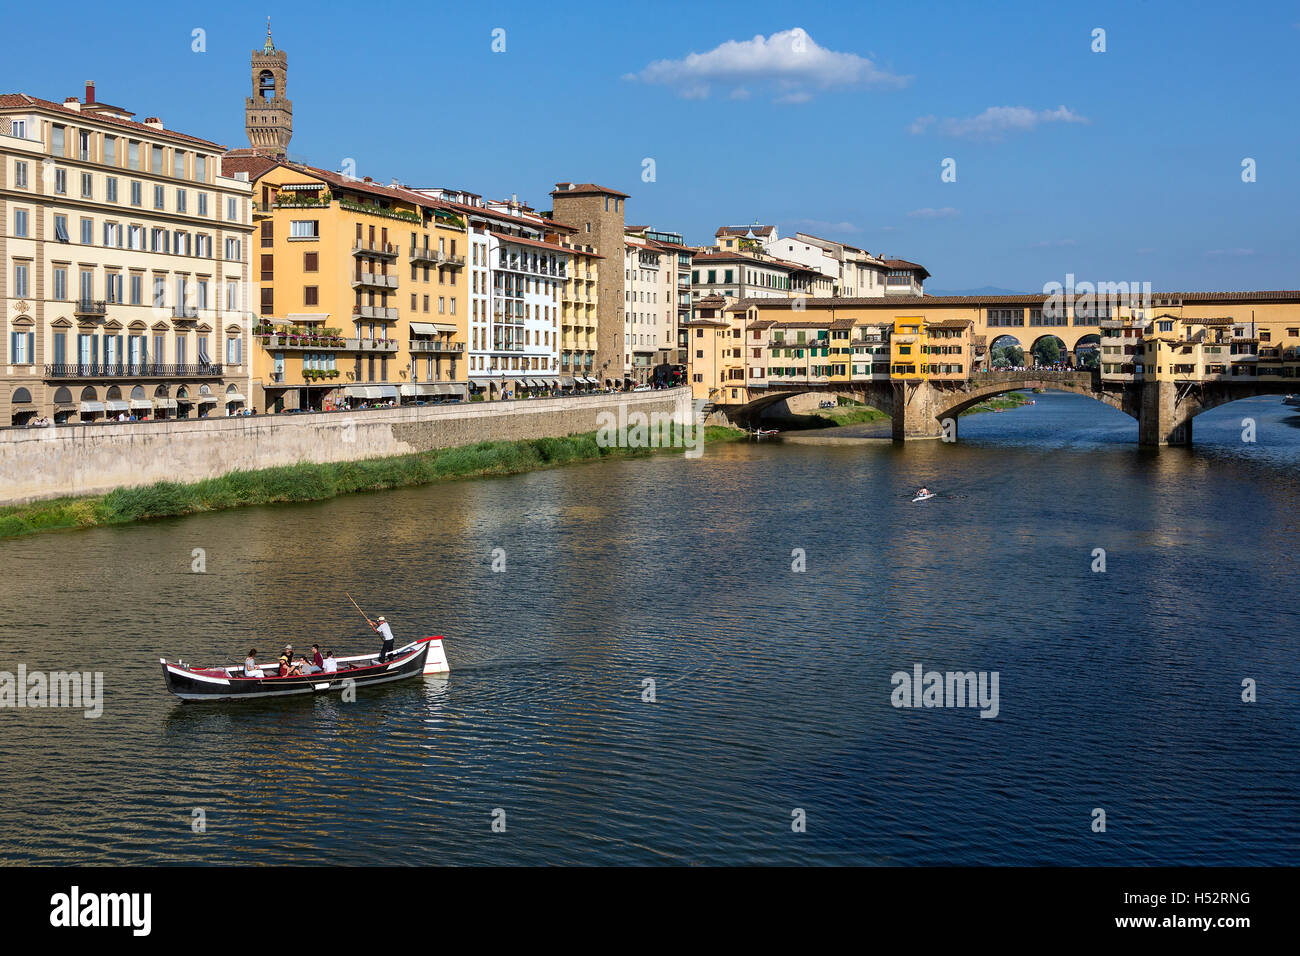 Firenze, Italia - Ponte Vecchio (Ponte Vecchio] è una pietra medievale Ponte sopra il fiume Arno. Foto Stock